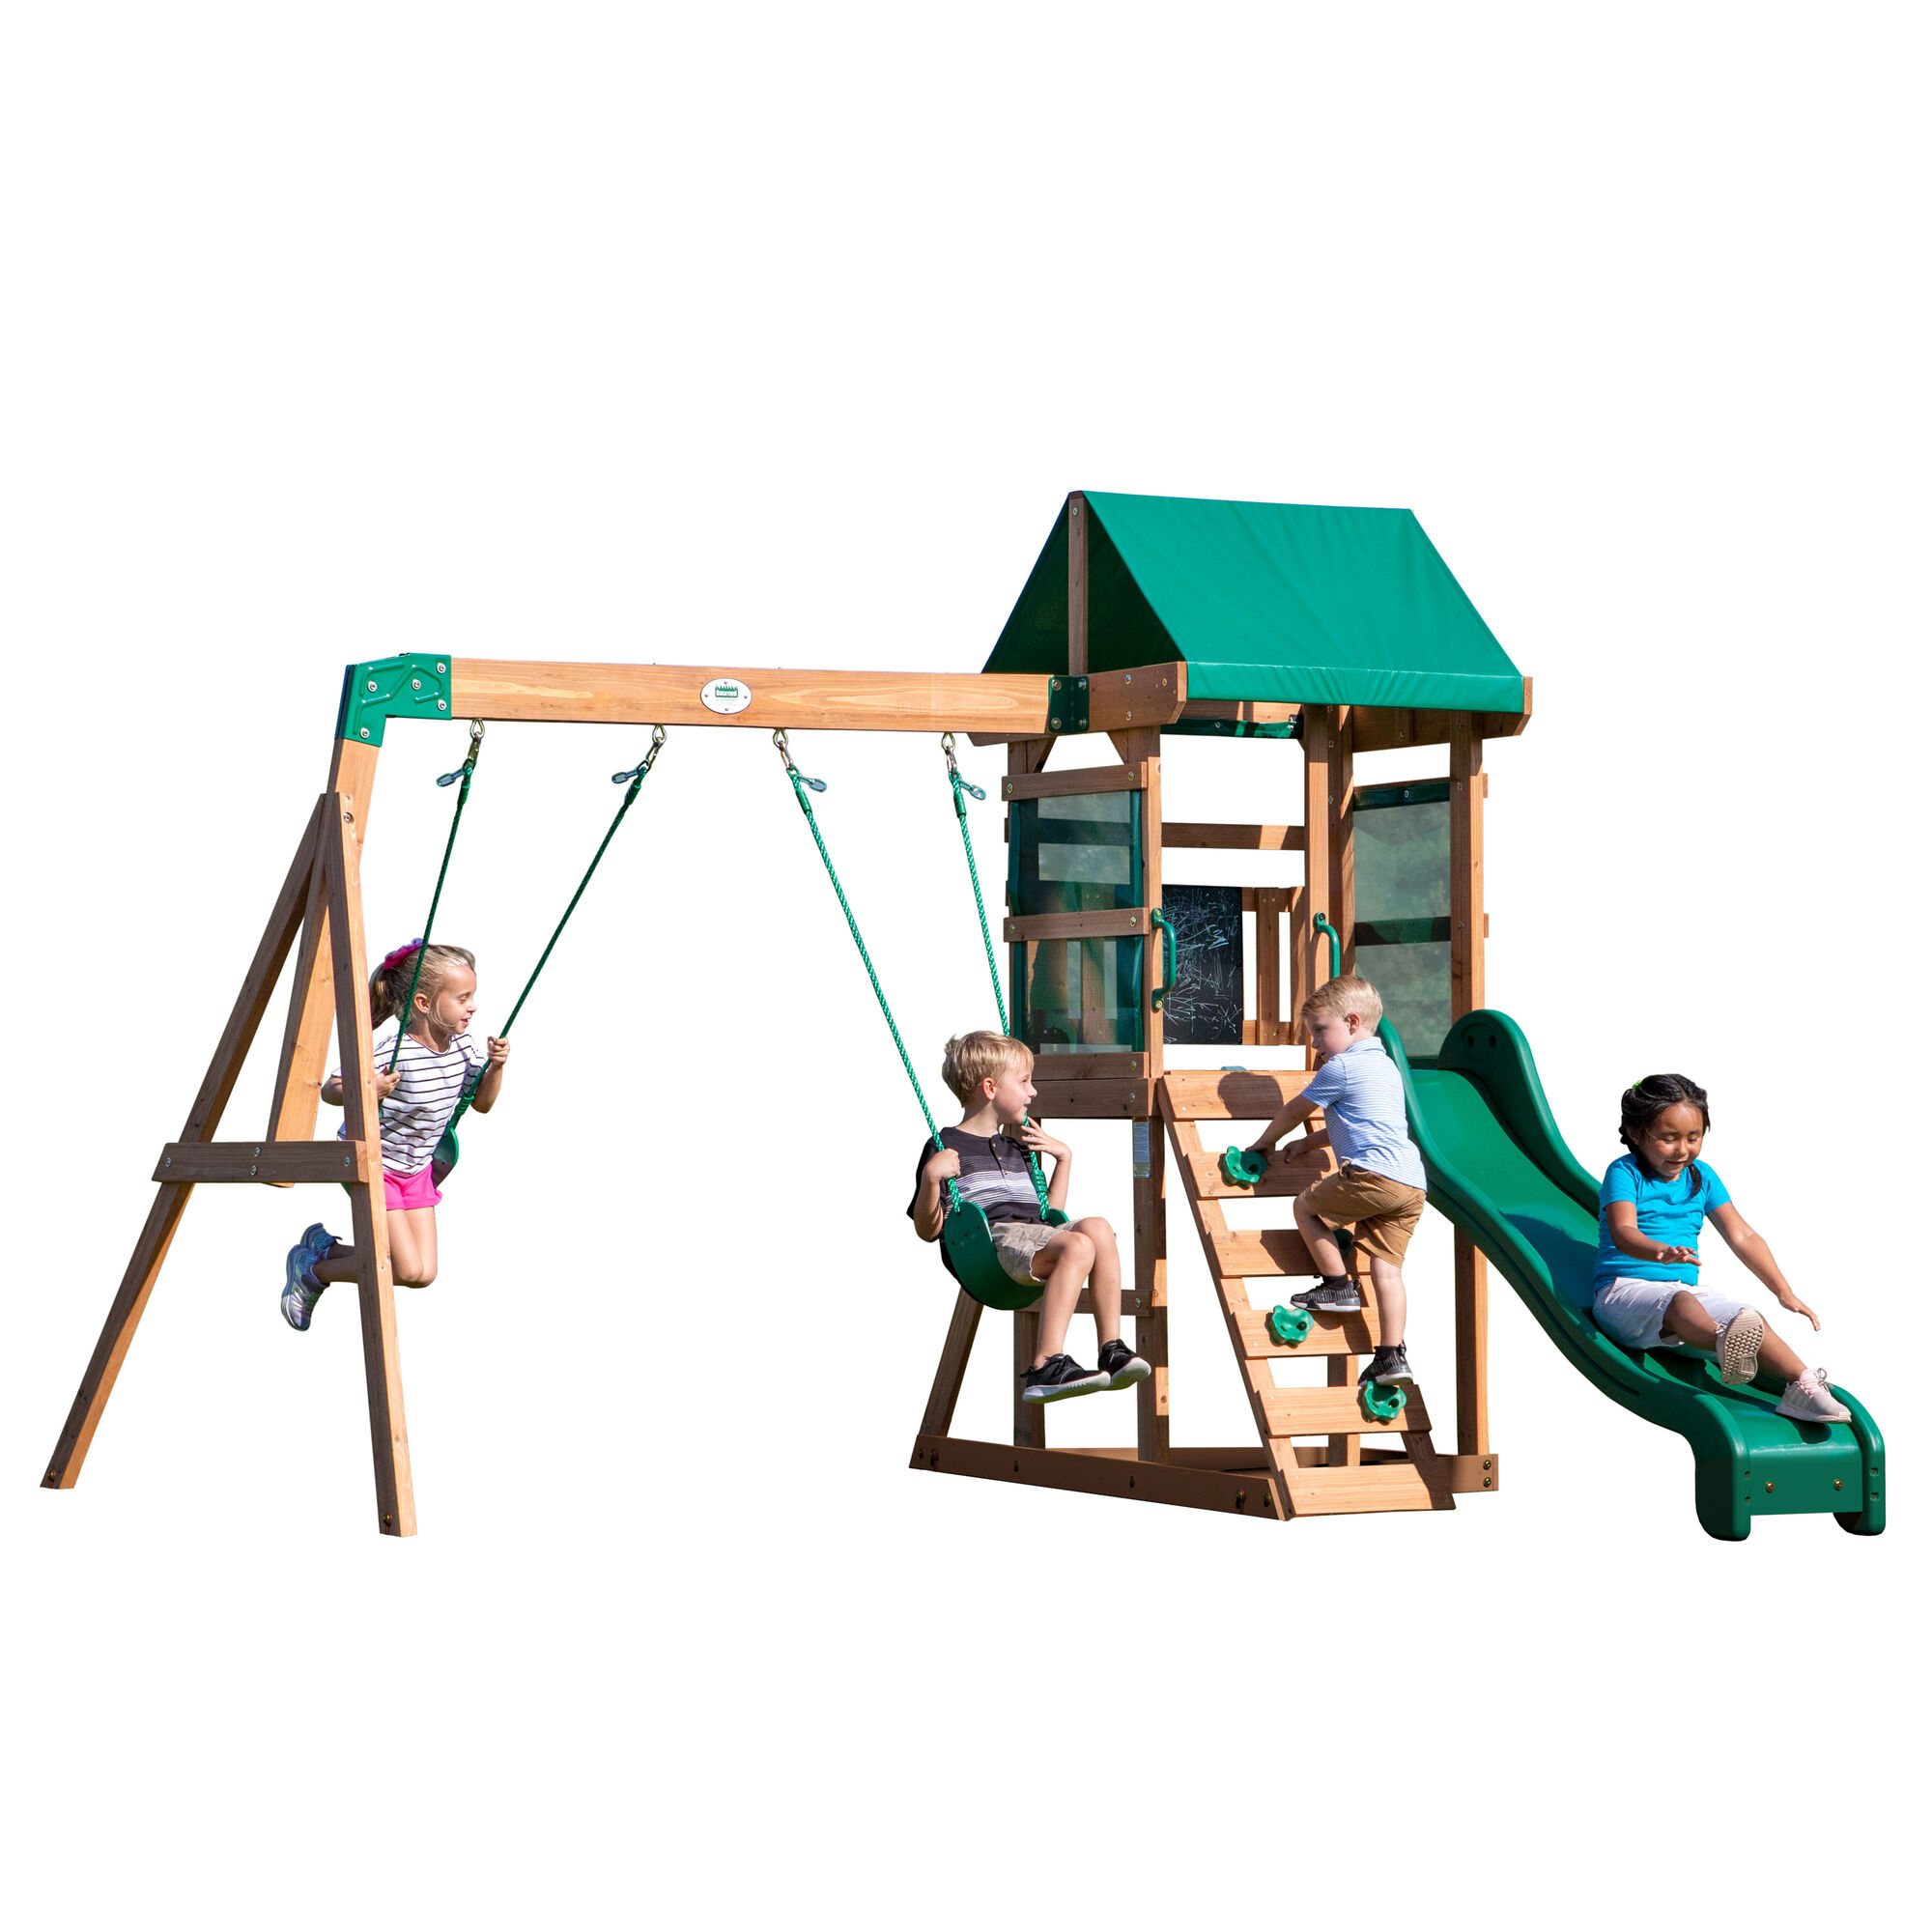 Produktfoto Foto Spielturm Schaukel Rutsche Kletterwand Outdoor draußen spielen